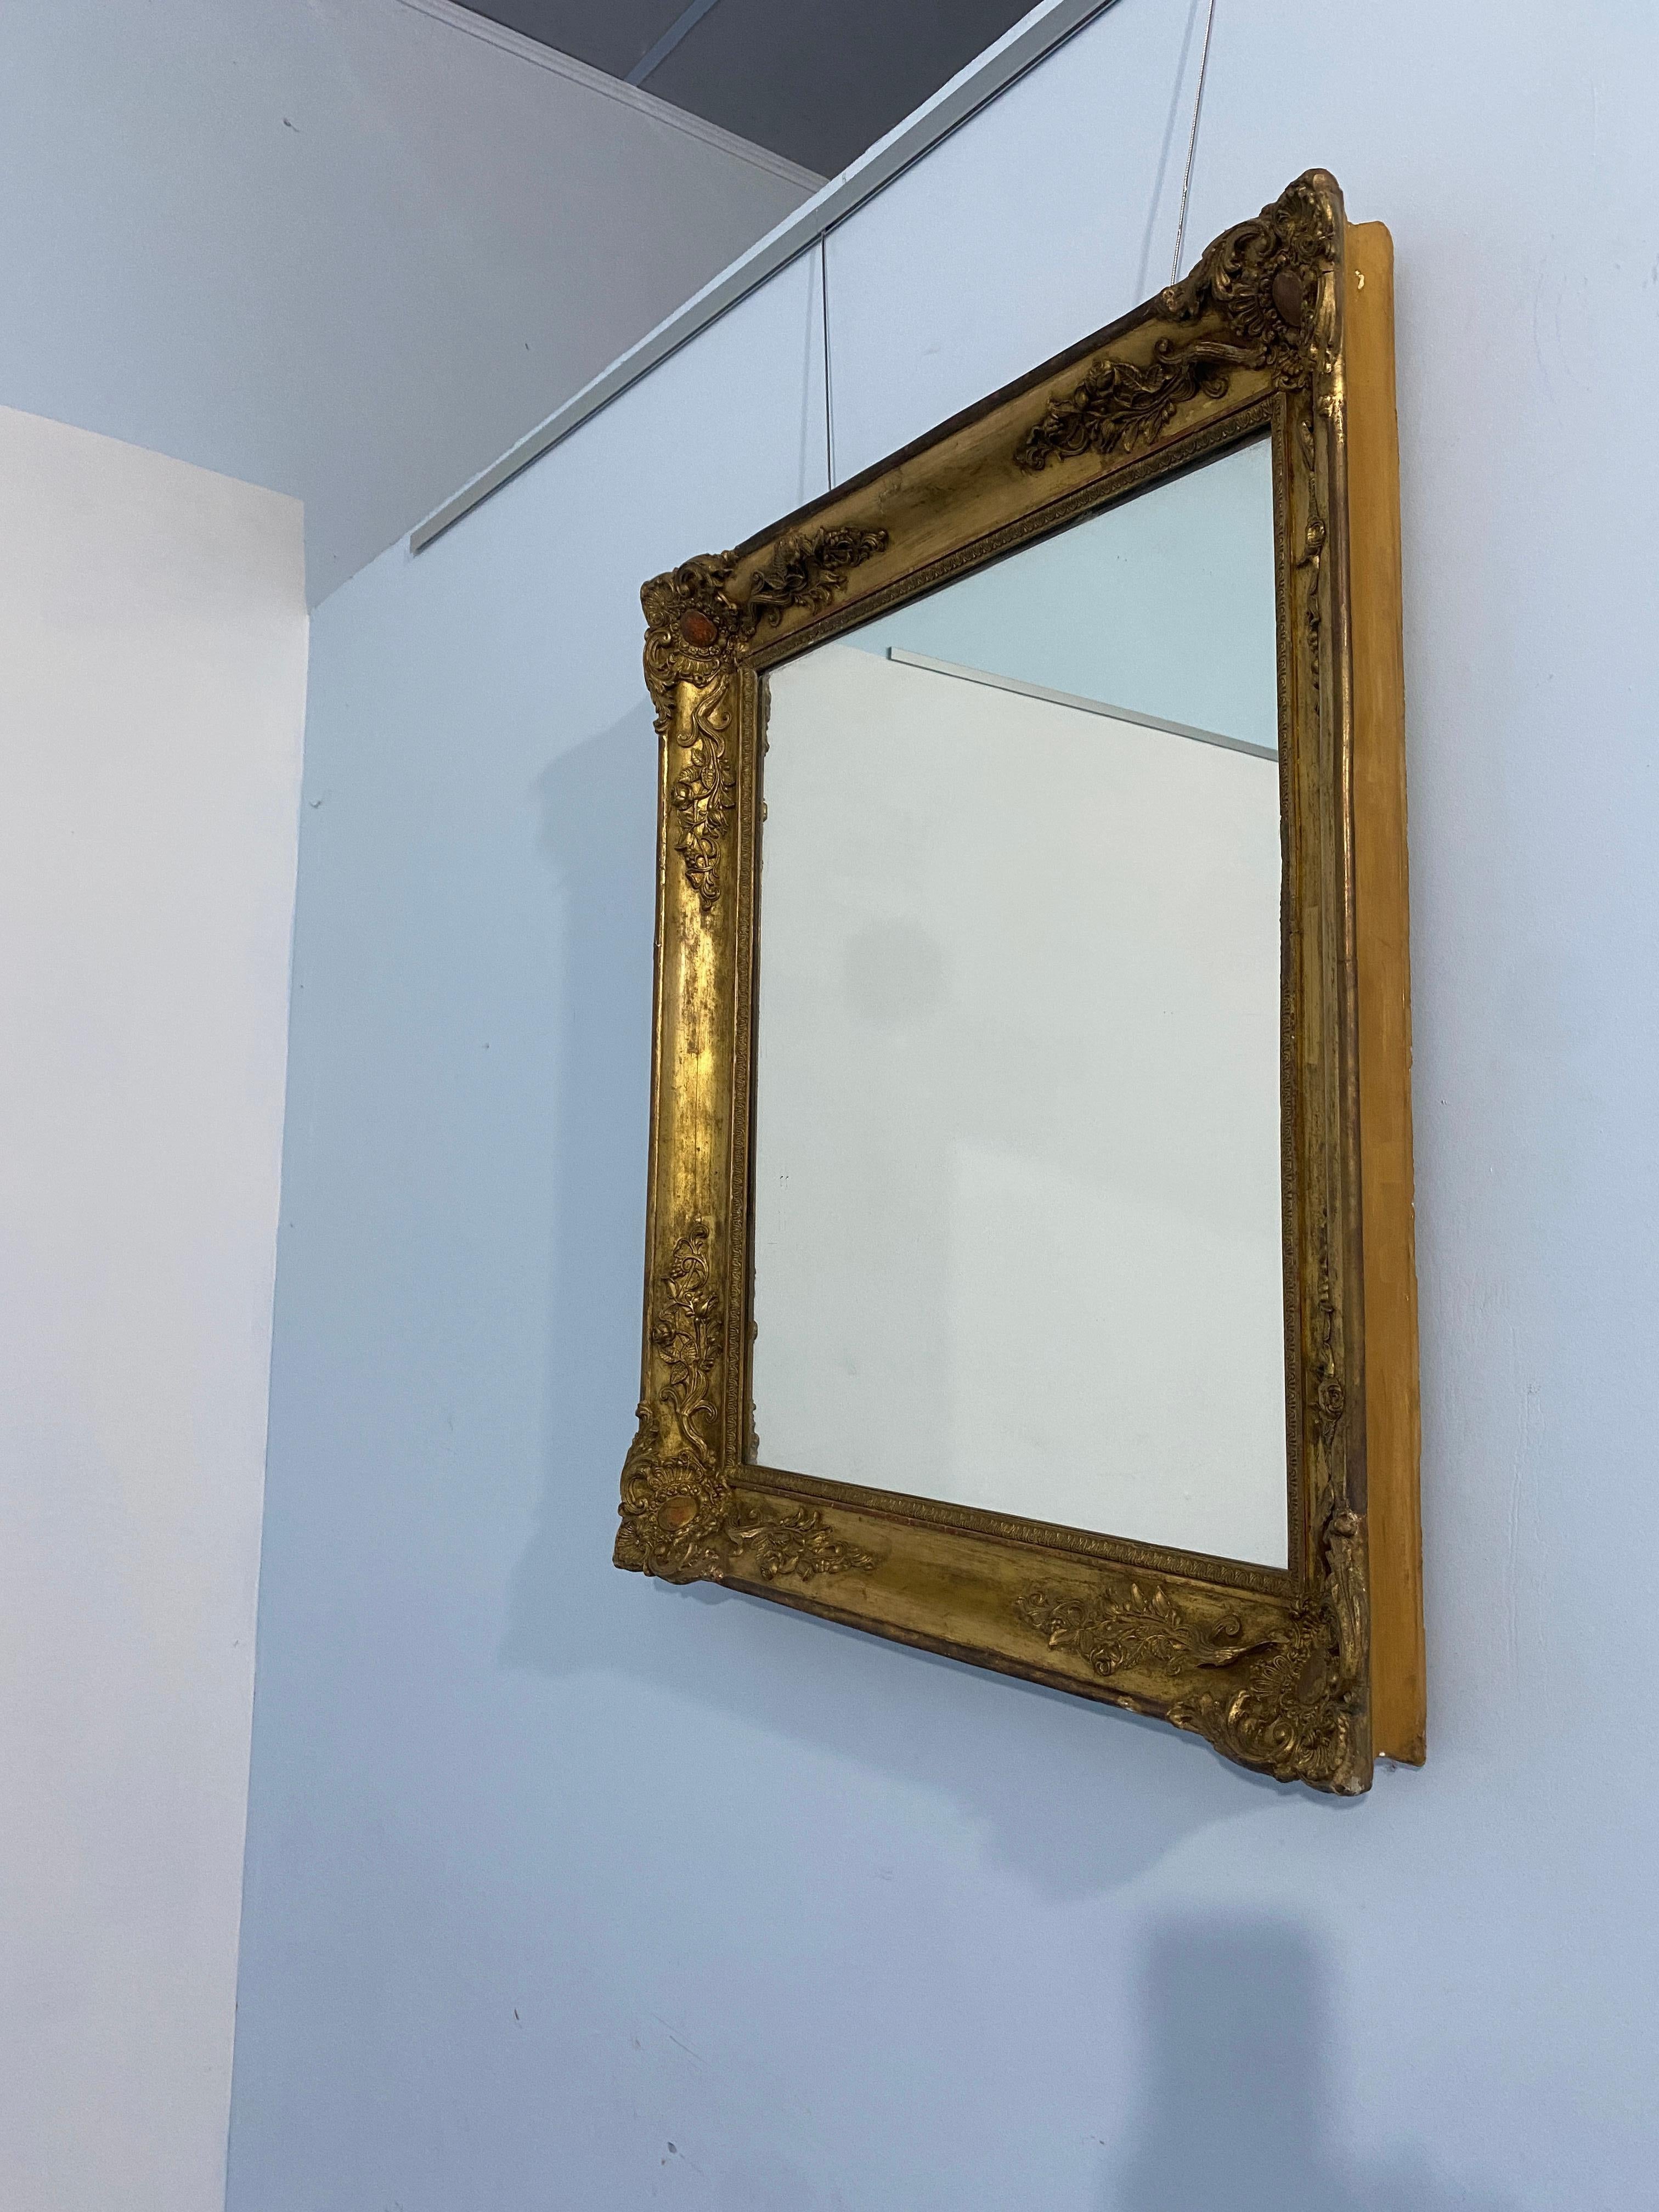 Miroir ancien français à feuilles d'or doré de l'époque Napoléon-Troisième, 1870. Les décorations raffinées qui ornent les quatre coins du cadre sont caractéristiques de l'époque.
L'état est très bon pour être encore d'origine